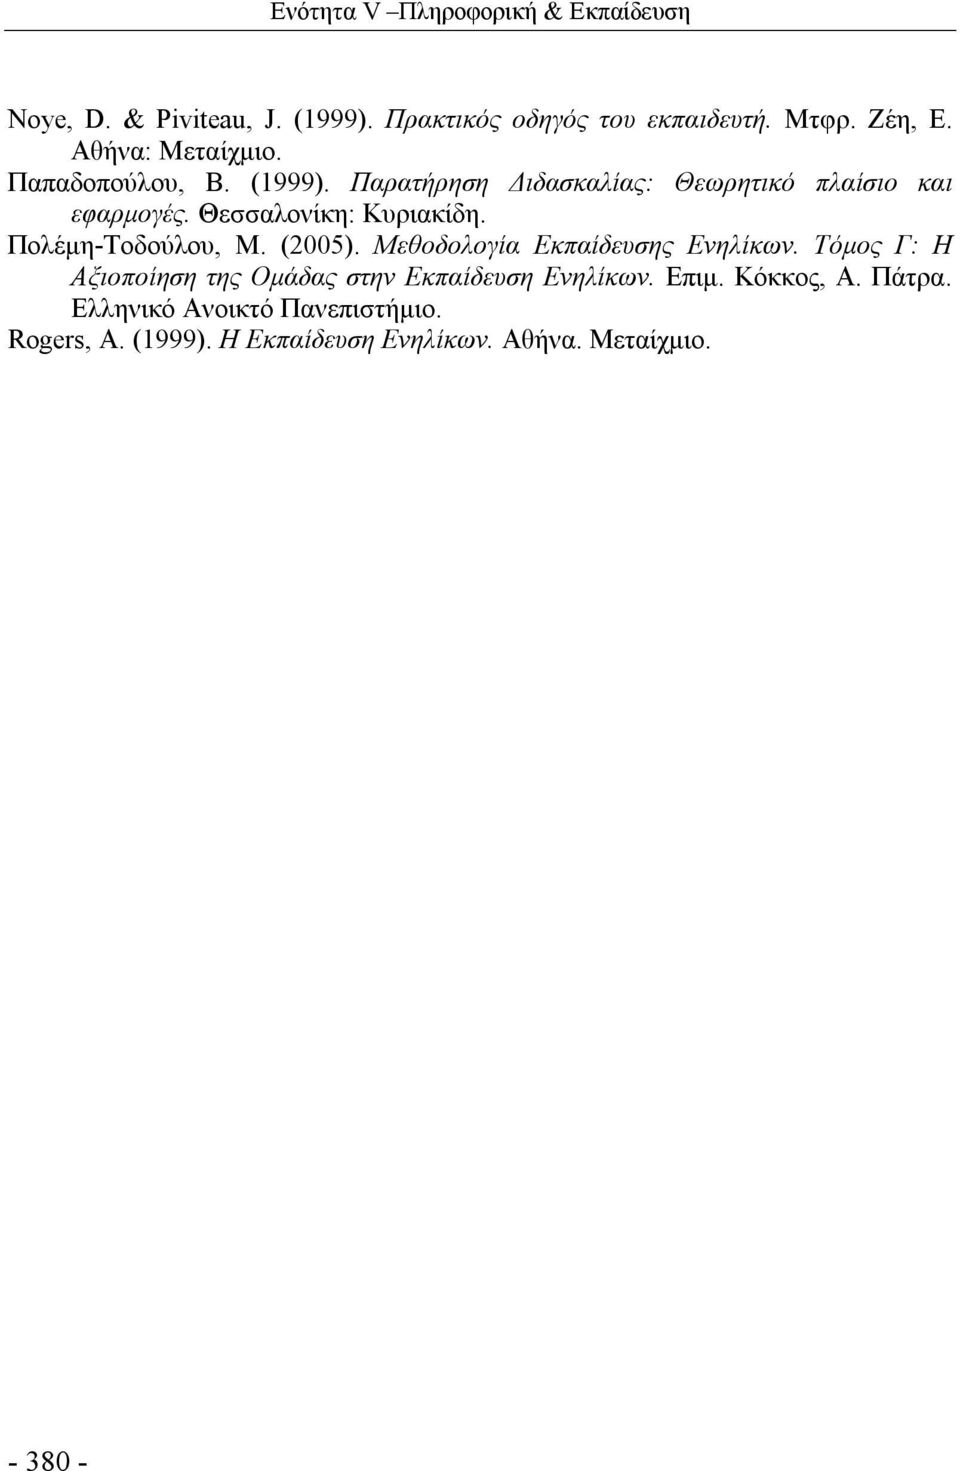 Θεσσαλονίκη: Κυριακίδη. Πολέμη-Τοδούλου, Μ. (2005). Μεθοδολογία Εκπαίδευσης Ενηλίκων.